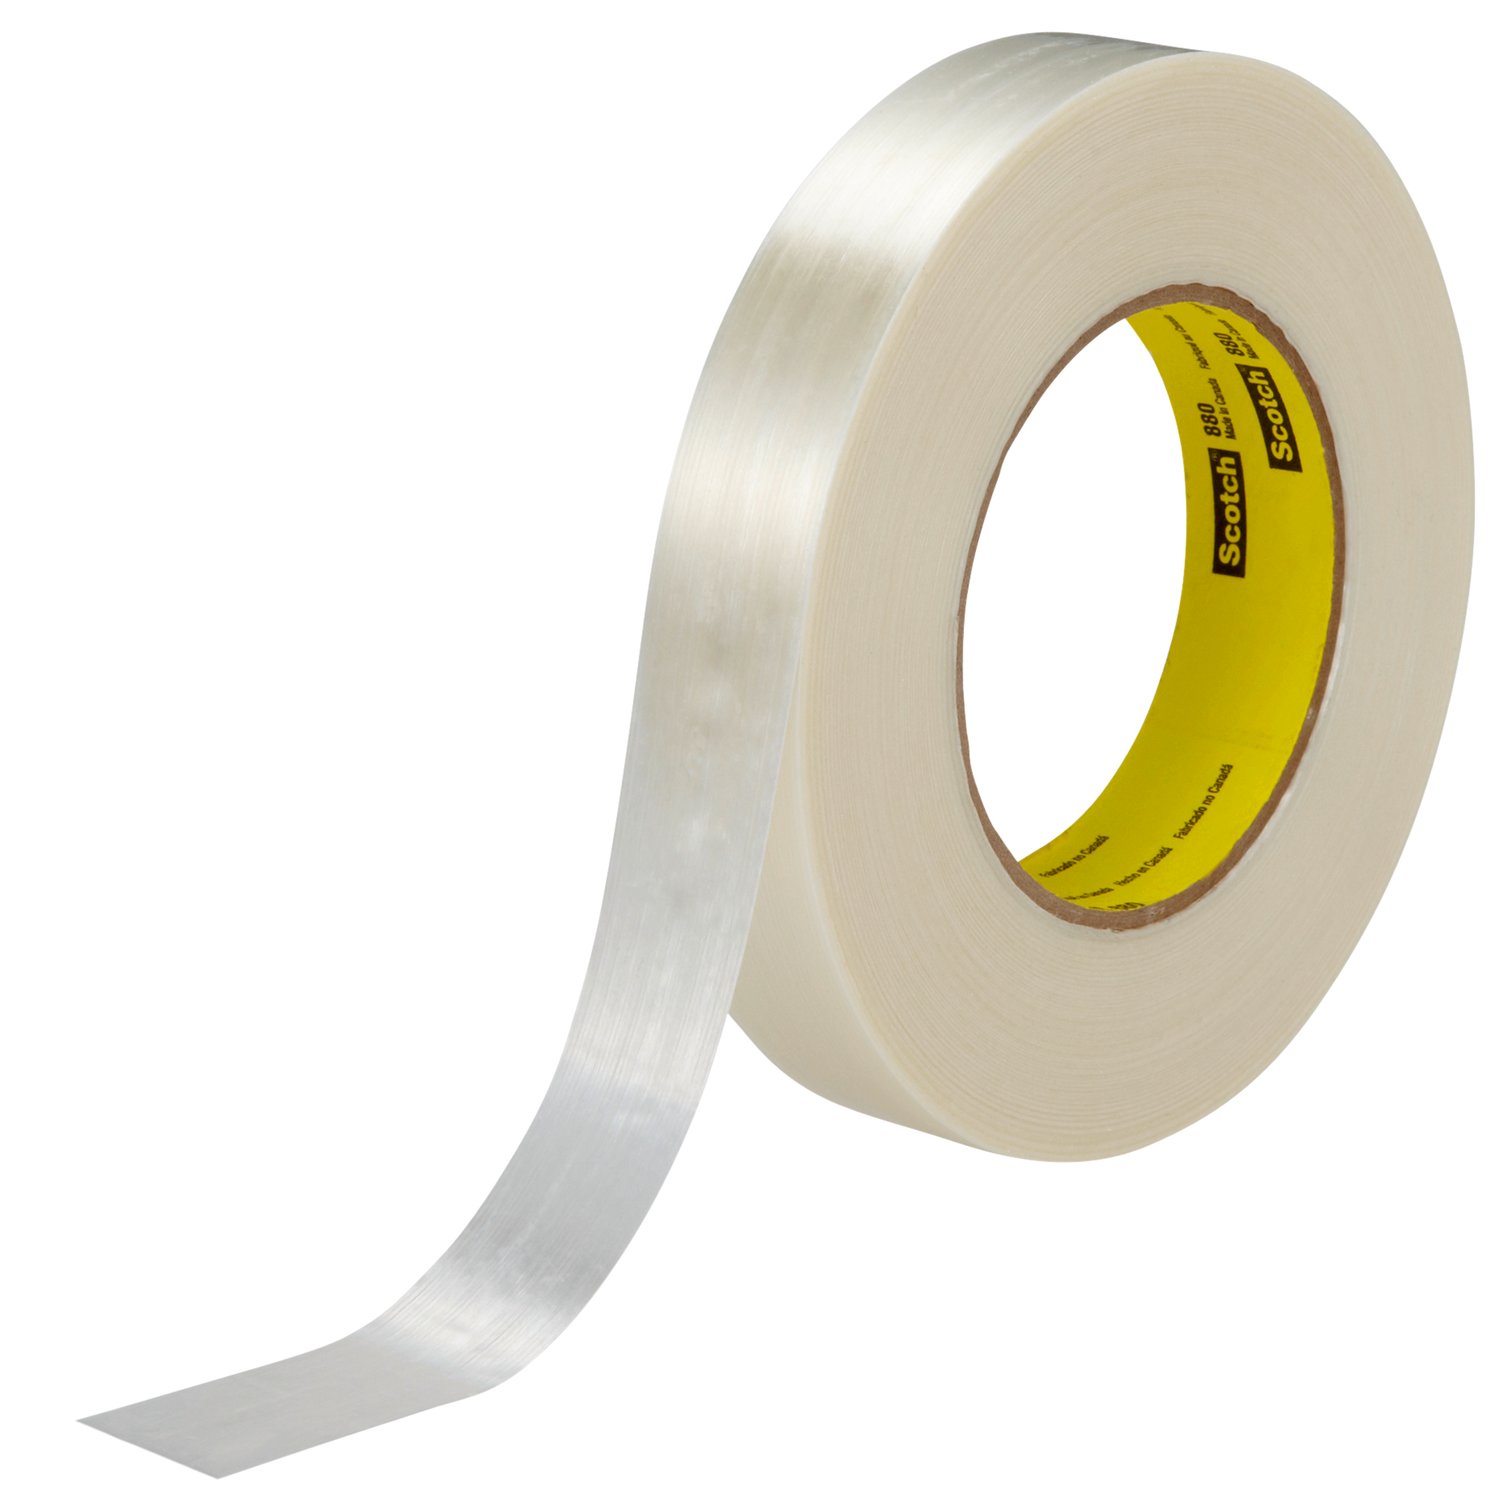 7000123809 - Scotch Filament Tape 880, Clear, 24 mm x 55 m, 7.7 mil, 36 rolls per
case